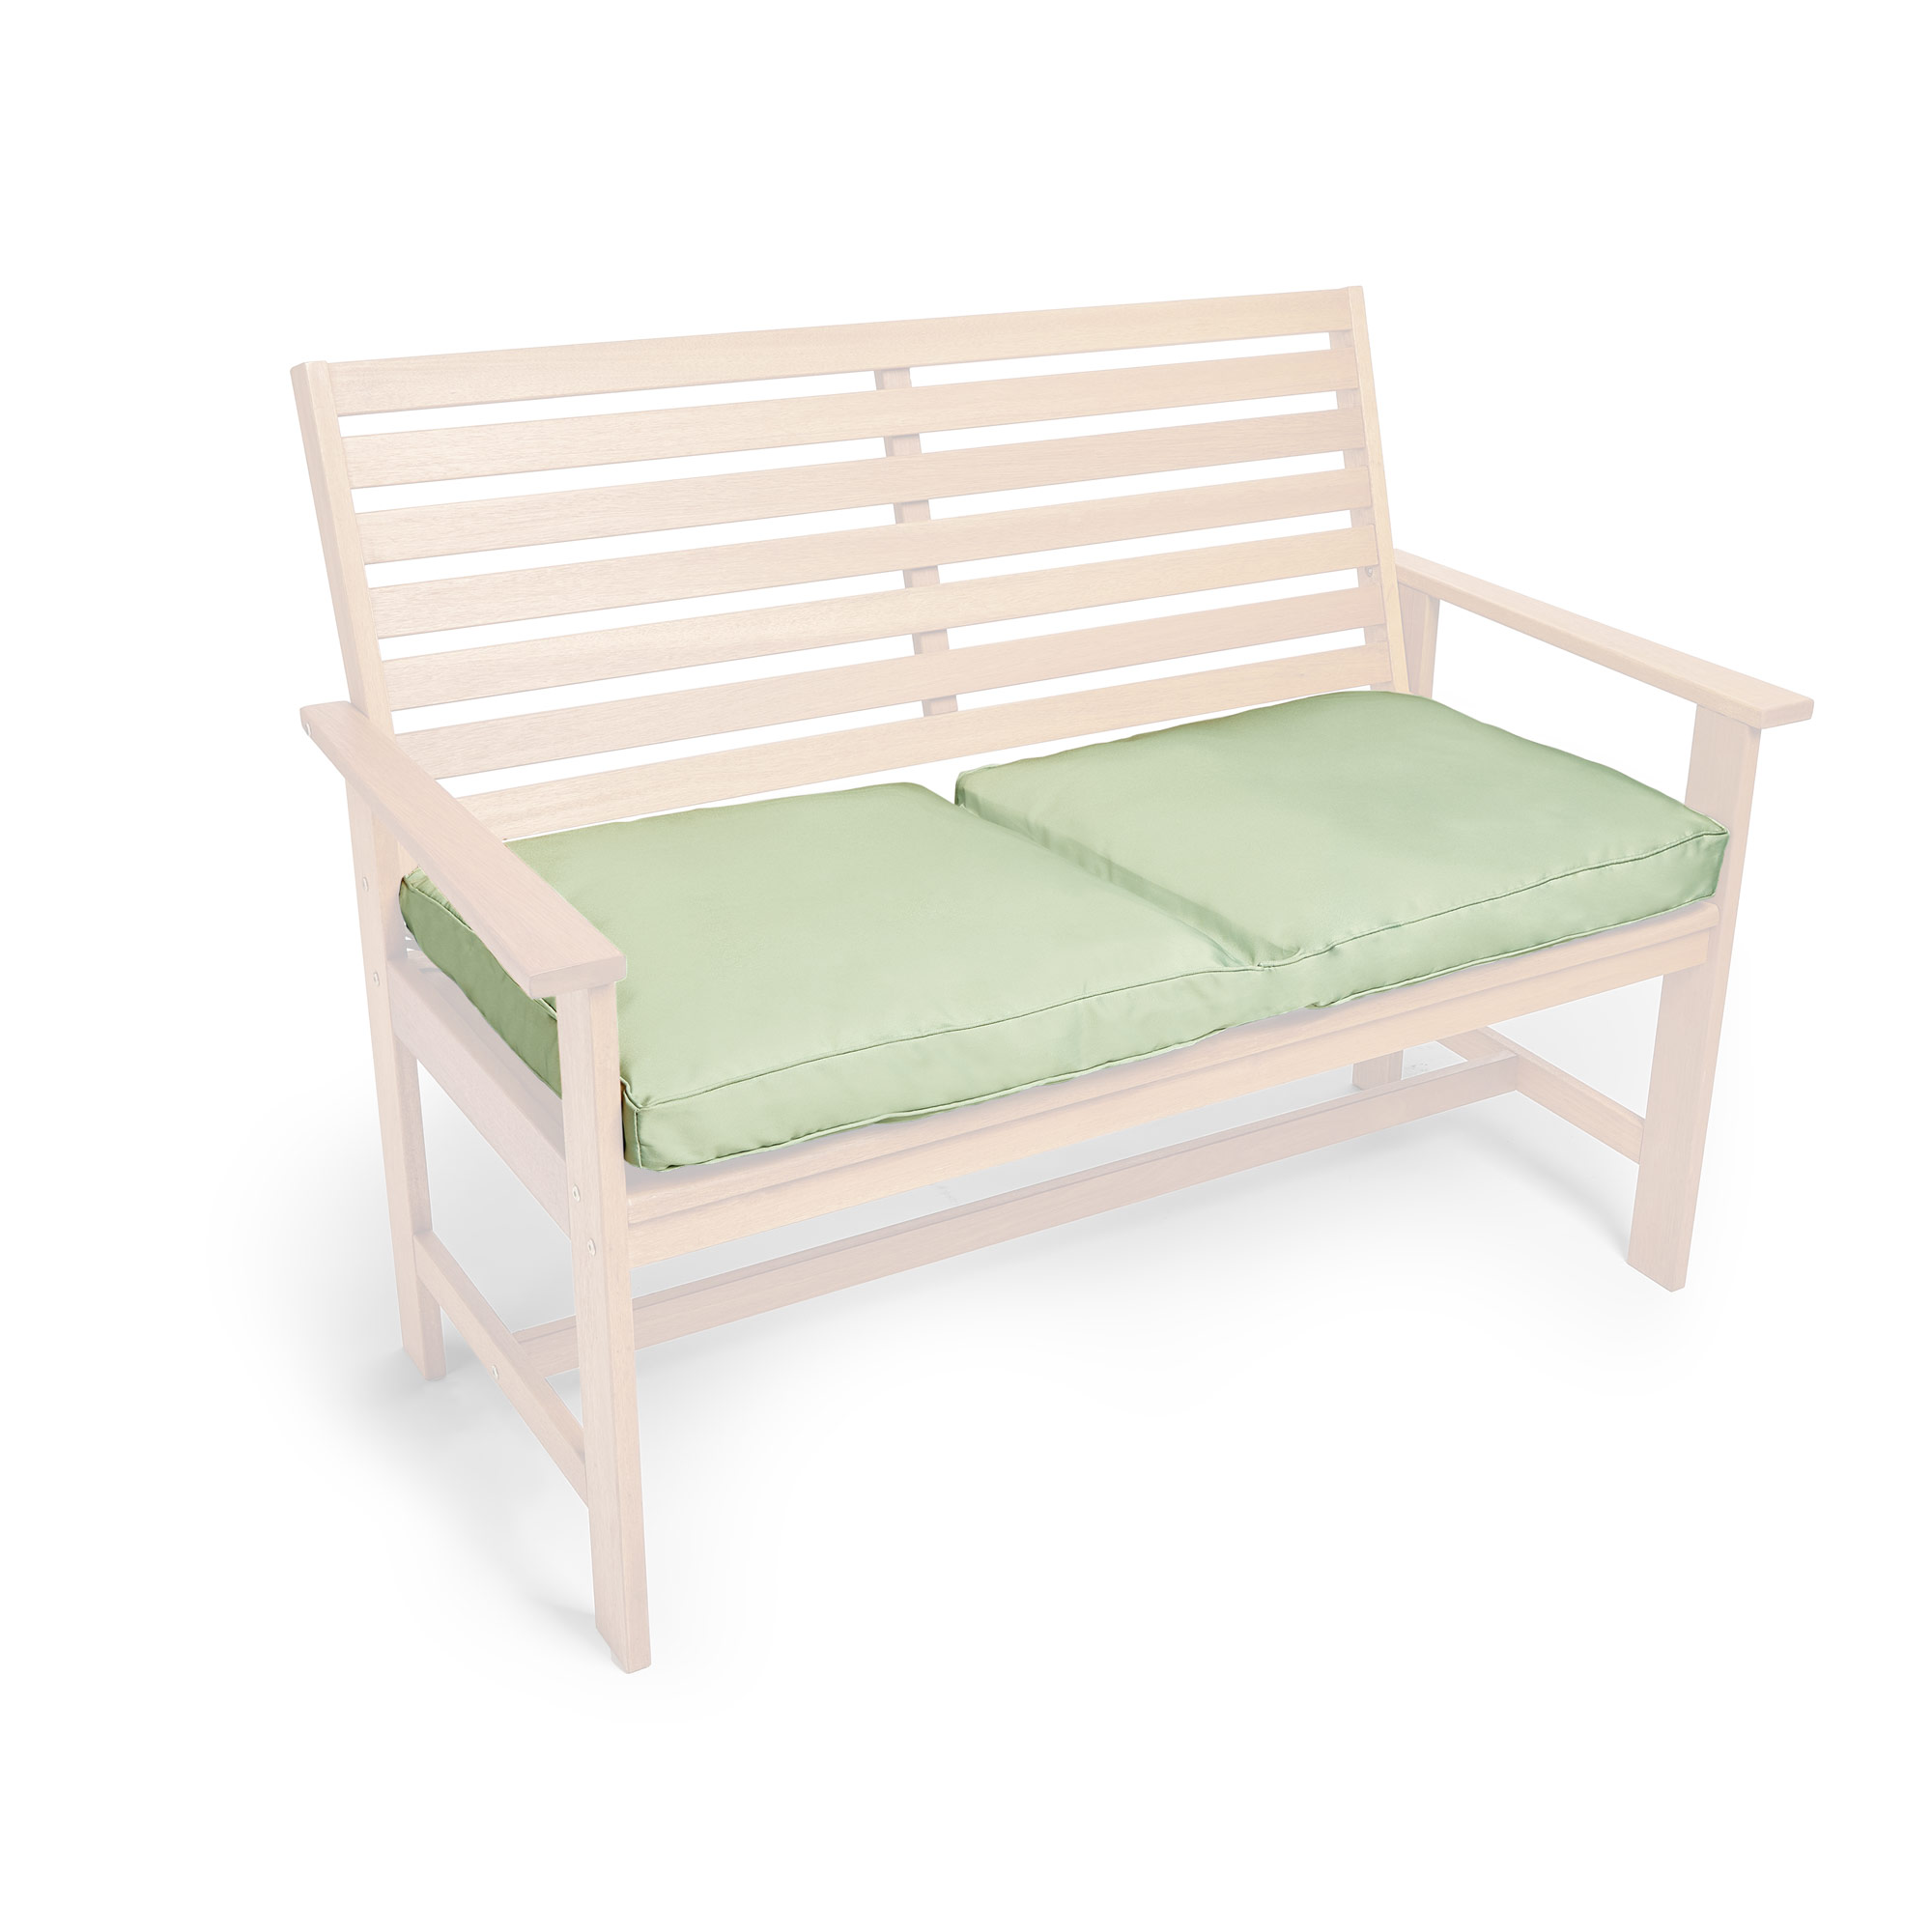 VonHaus Green Garden Bench Cushion – 2 Seater Water Resistant Outdoor Seat Pad